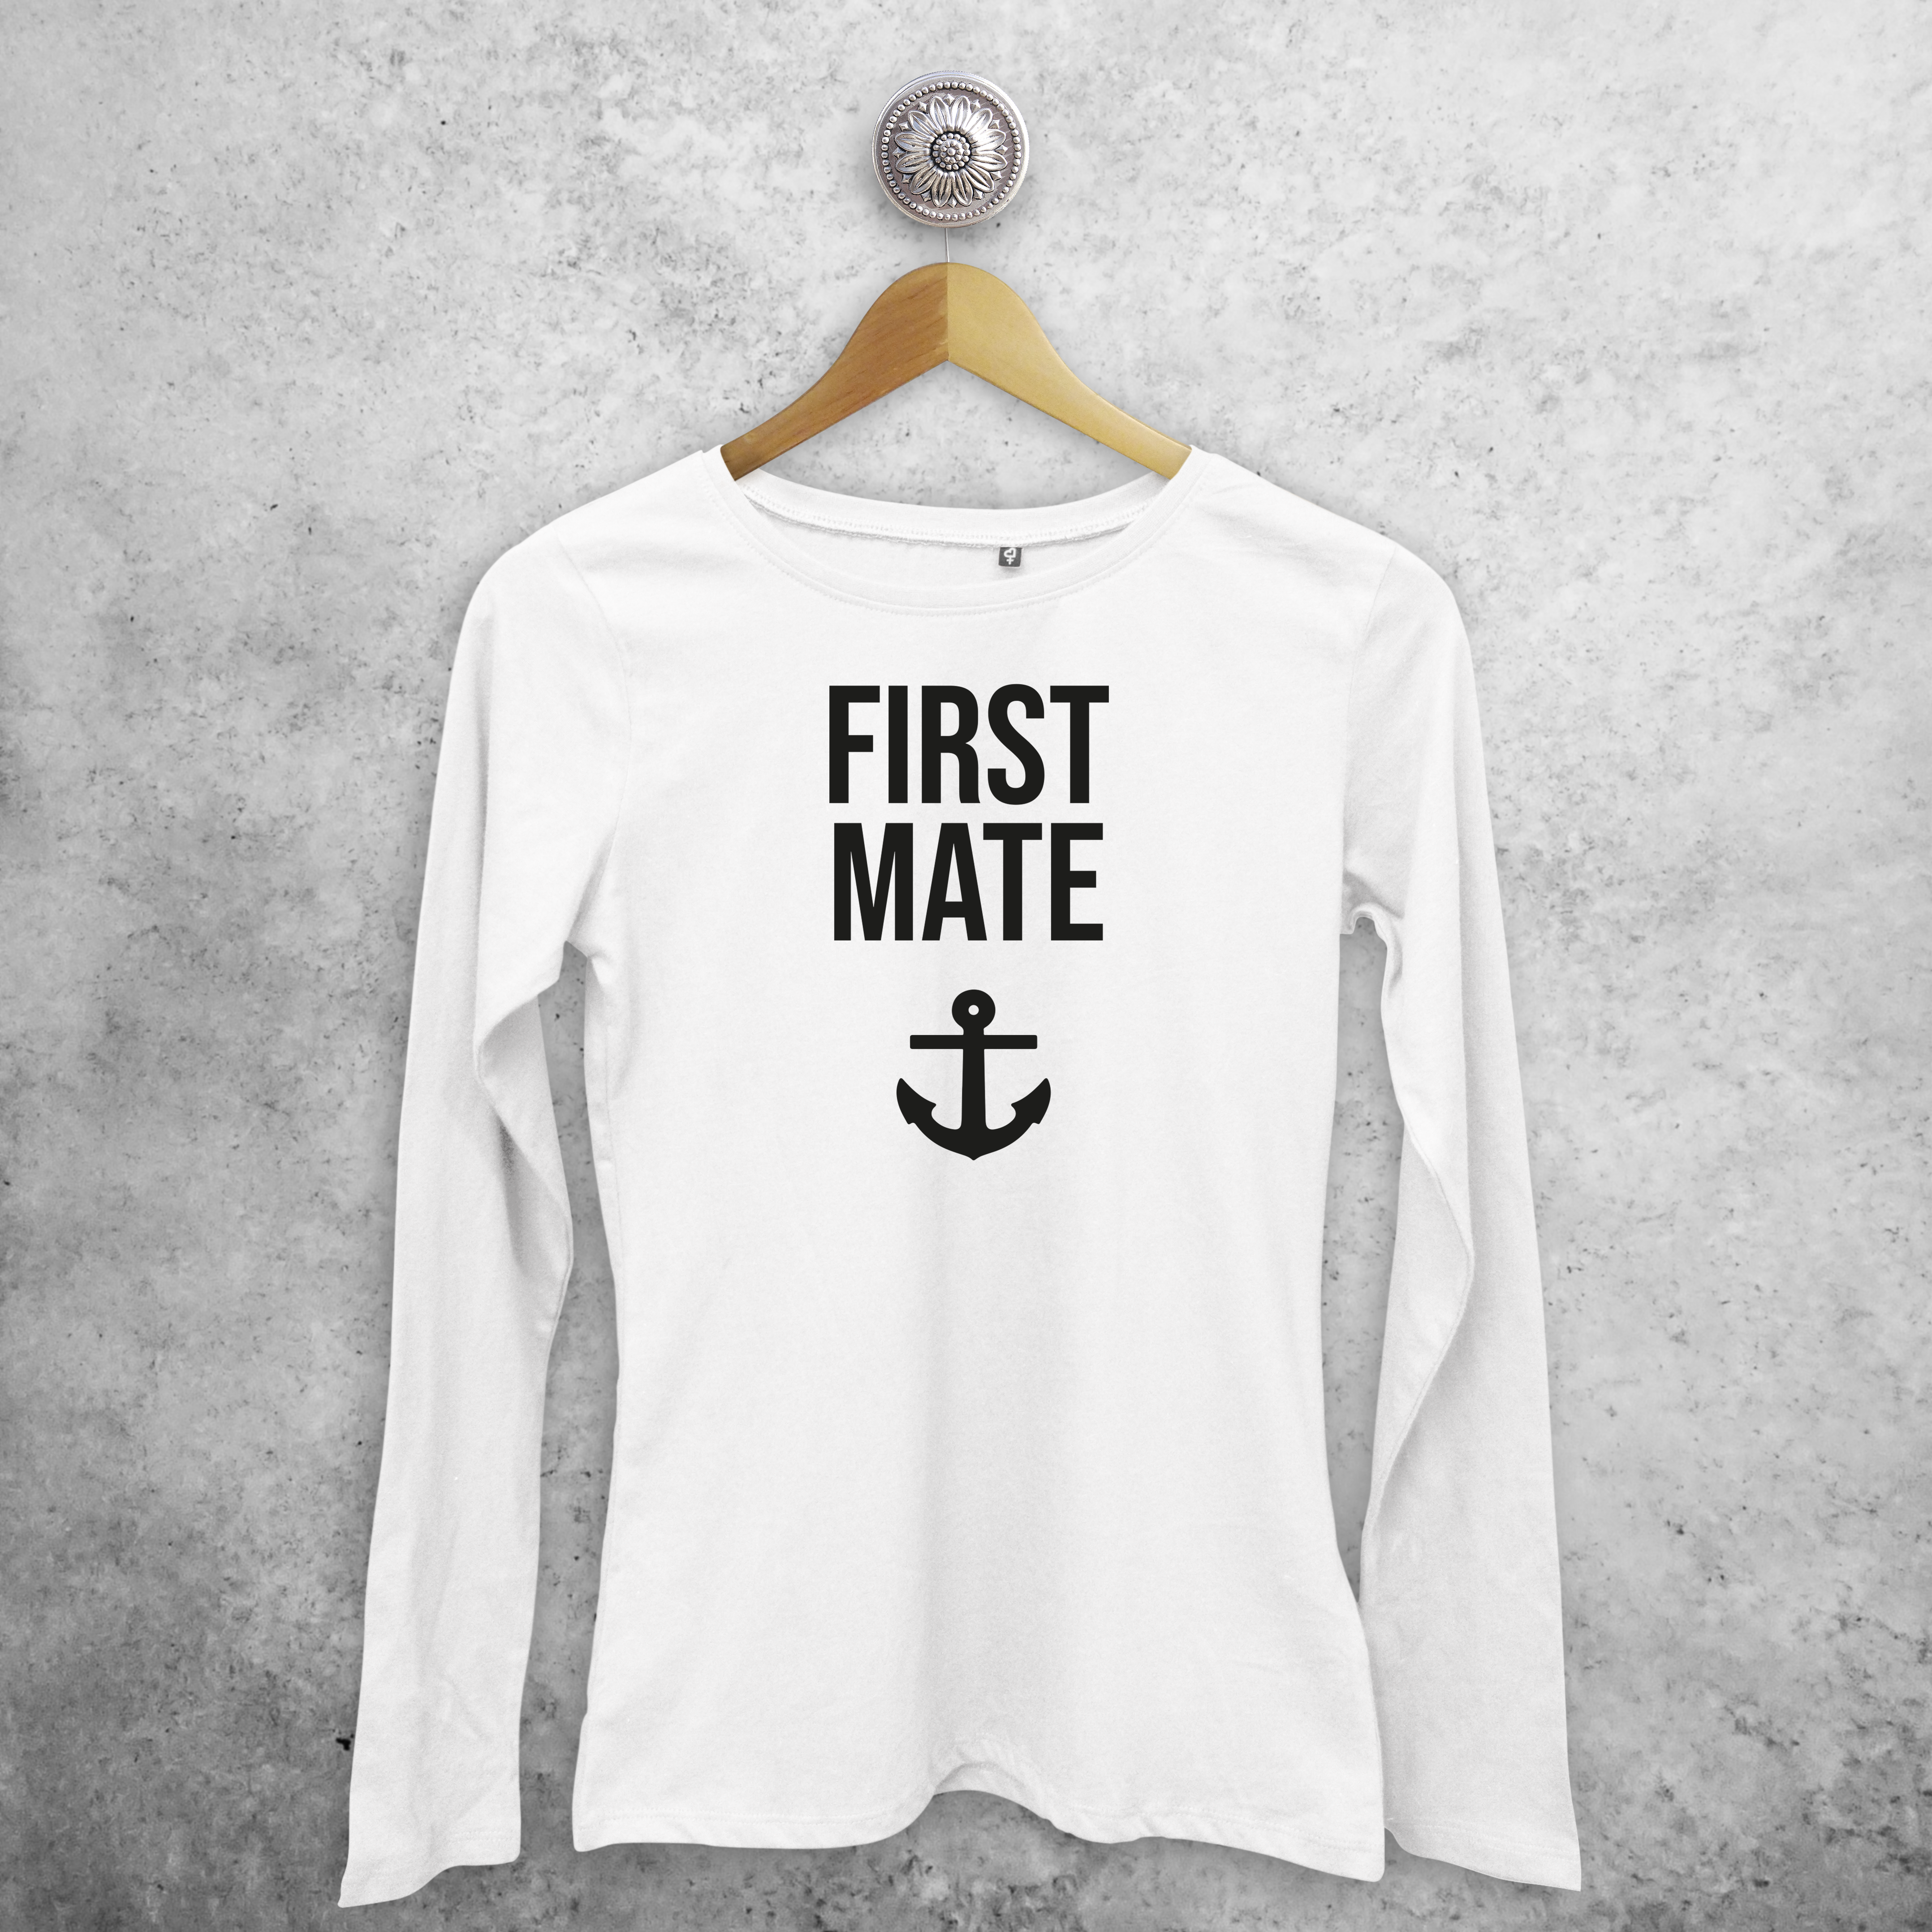 'First mate' volwassene shirt met lange mouwen